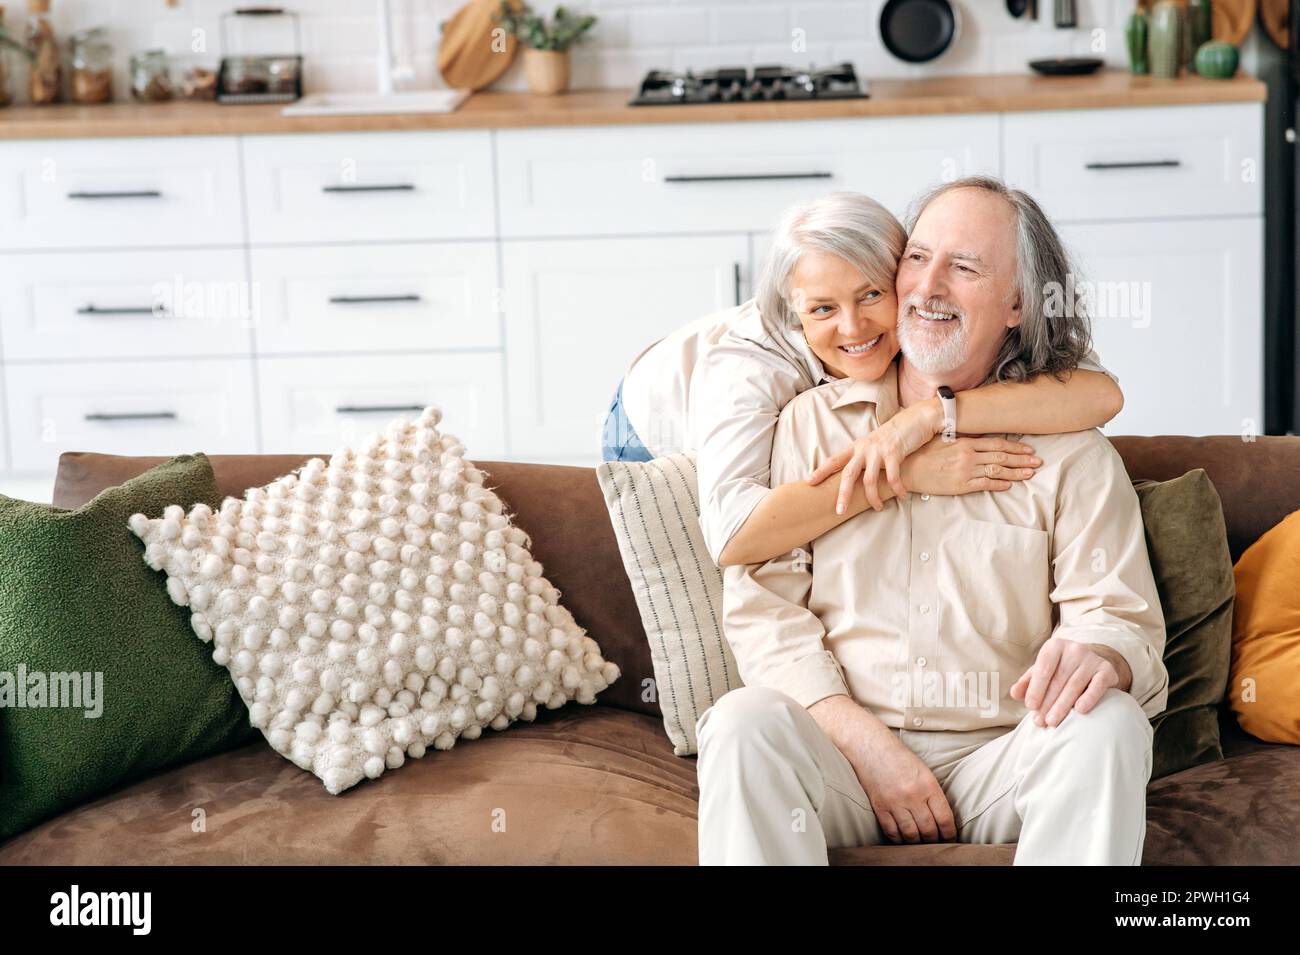 Foto von glücklichen weißhäutigen grauhaarigen Ehepartnern im Rentenalter, Ehemann und Ehefrau verbringen Zeit zusammen im Wohnzimmer, eine Frau umarmt ihren geliebten Mann, sitzt auf dem Sofa, sie lächeln, freuen sich, zusammen zu sein Stockfoto